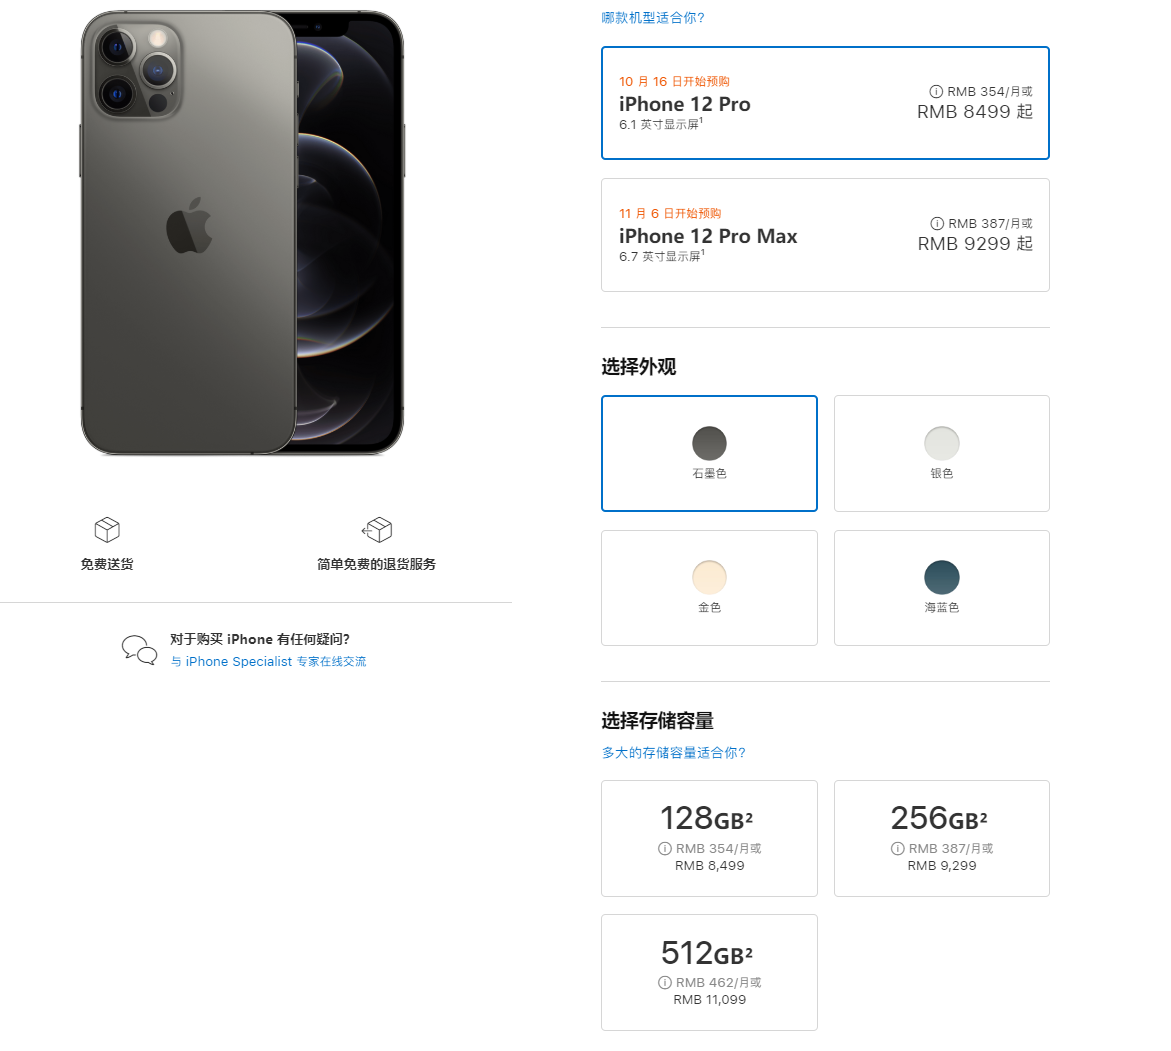 5499元起 iPhone 12正式发布 全系支持5G